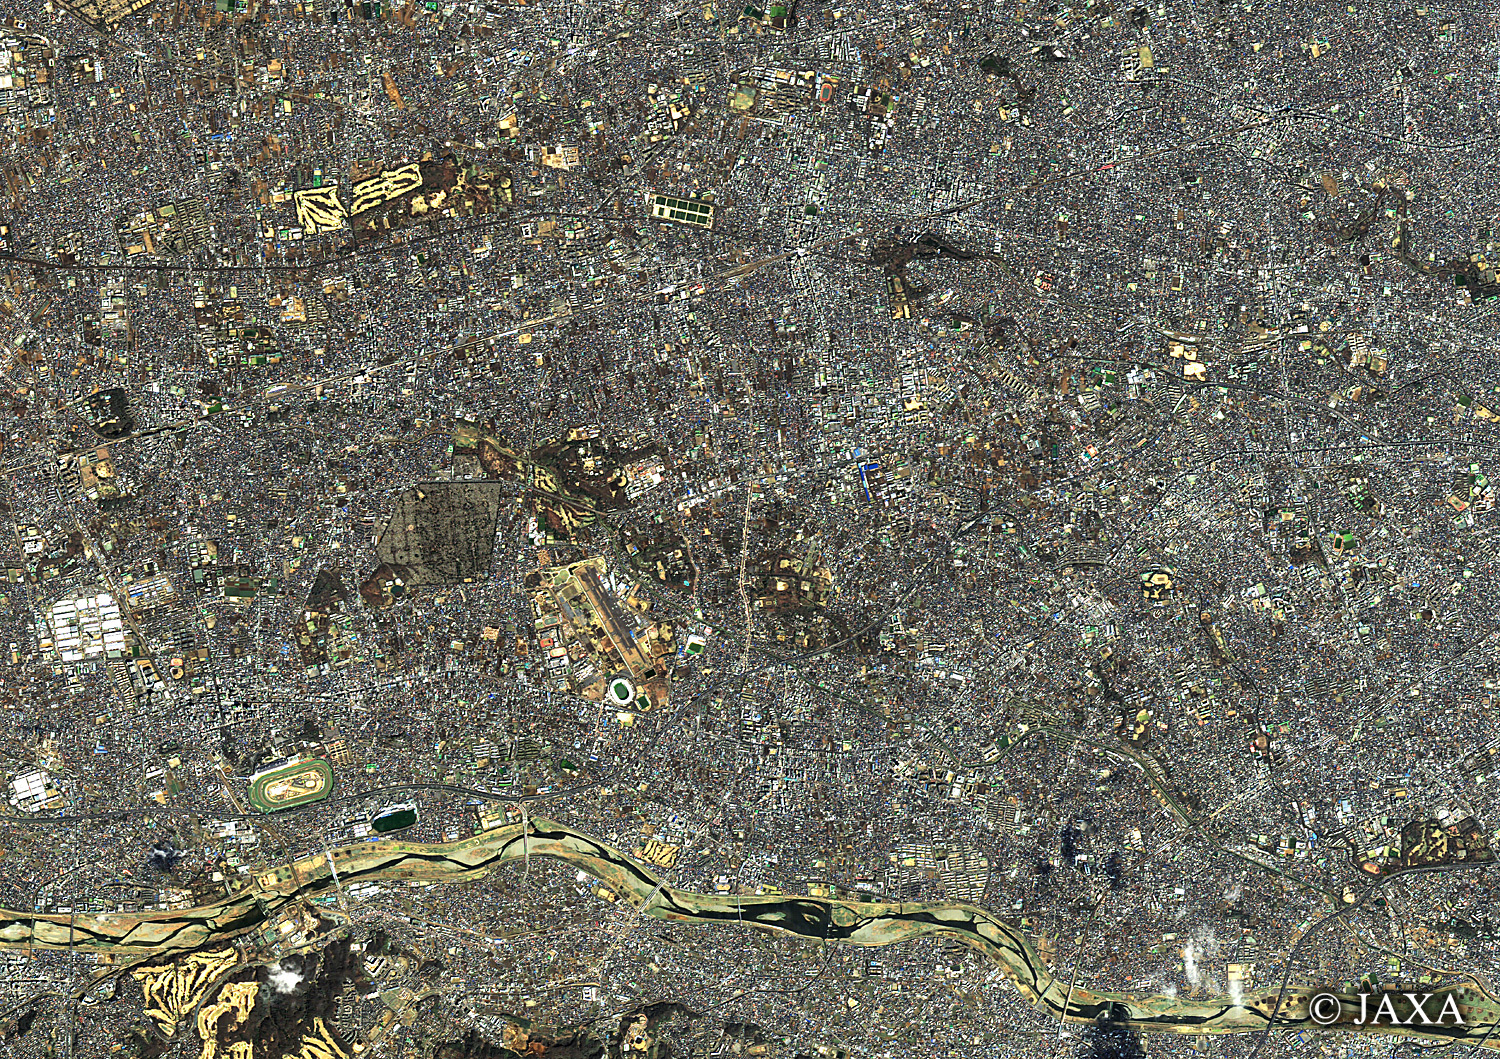 だいちから見た日本の都市 調布市:衛星画像